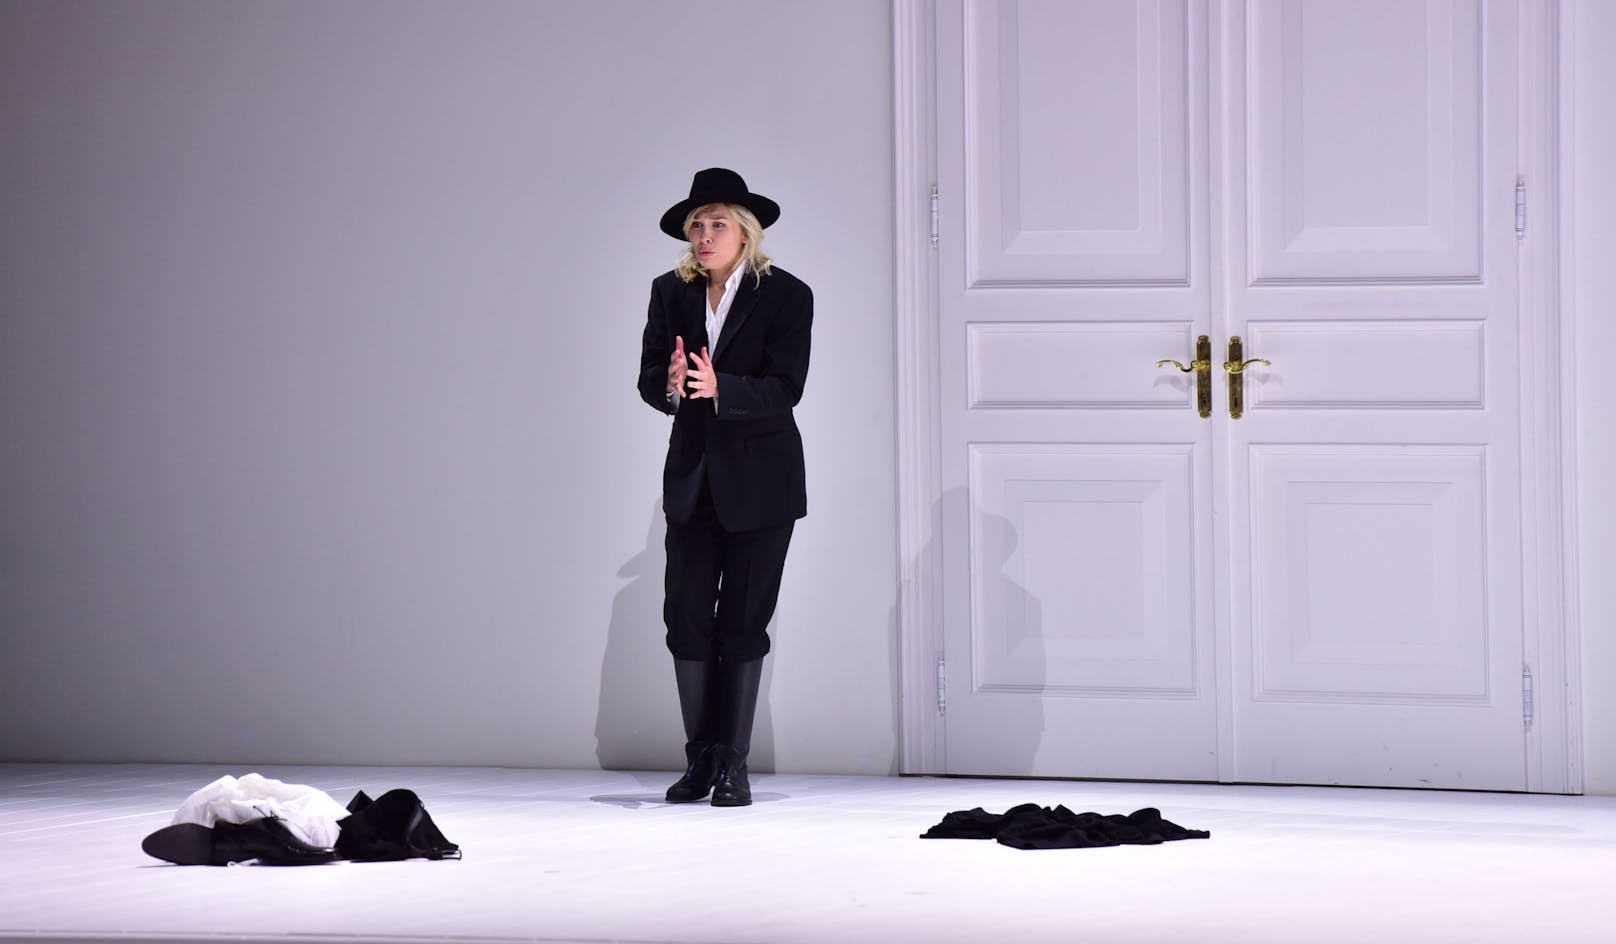 Elsa Dreisig als Fiordiligi auf der Bühne von "Così fan tutte".&nbsp;